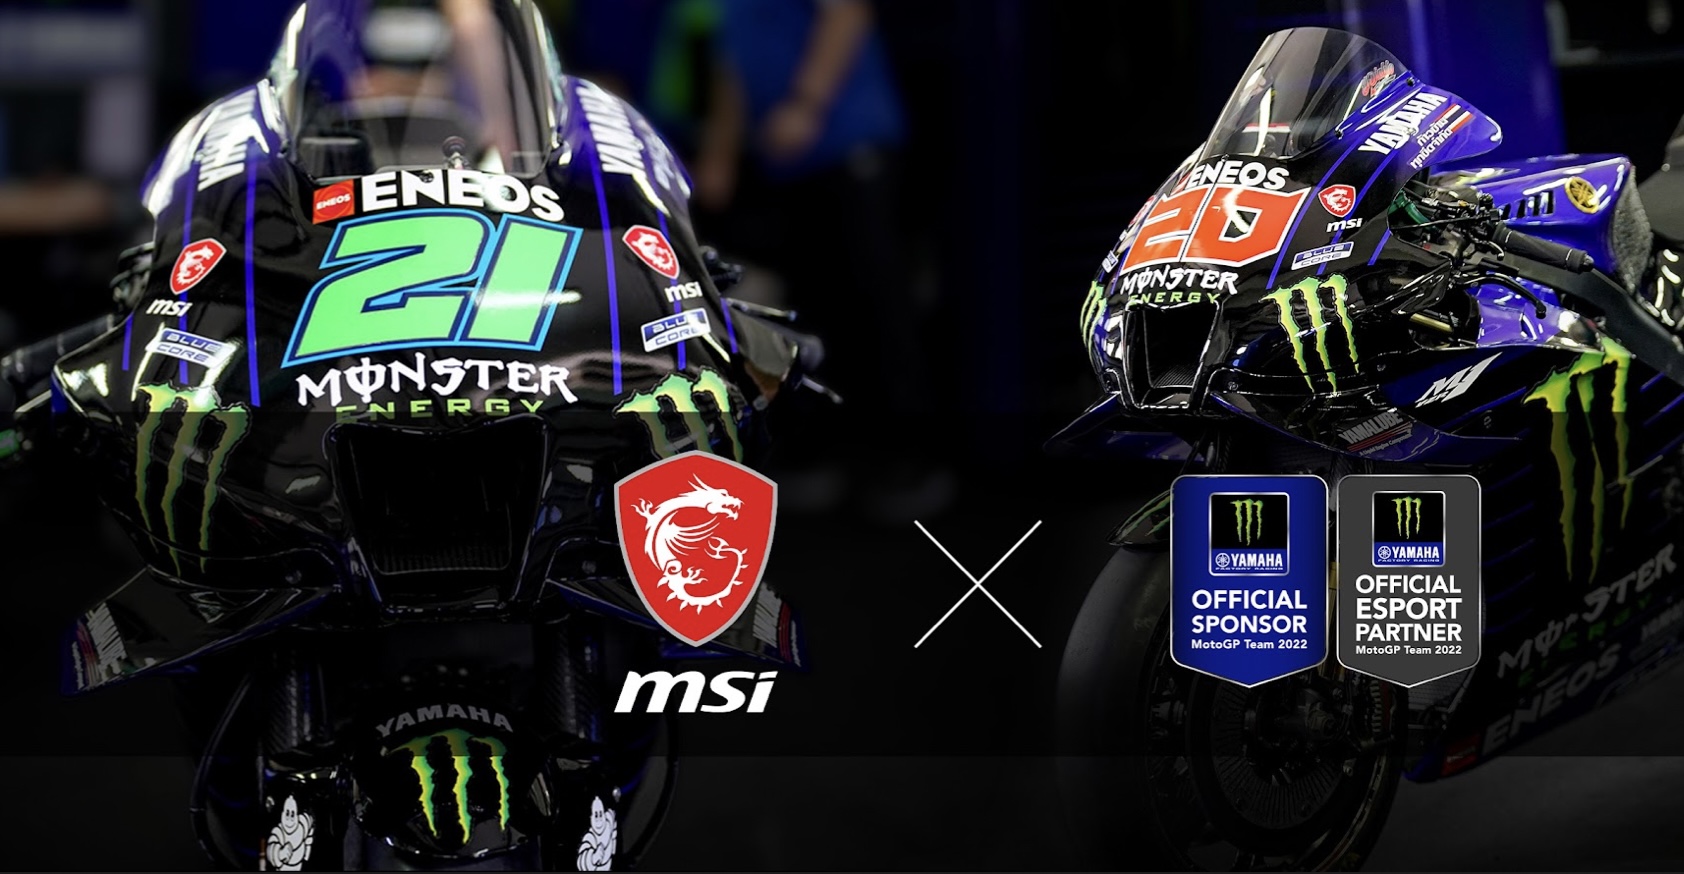 MSI Resmi Jadi Sponsori Sponsor eSport Monster Energy Yamaha MotoGP